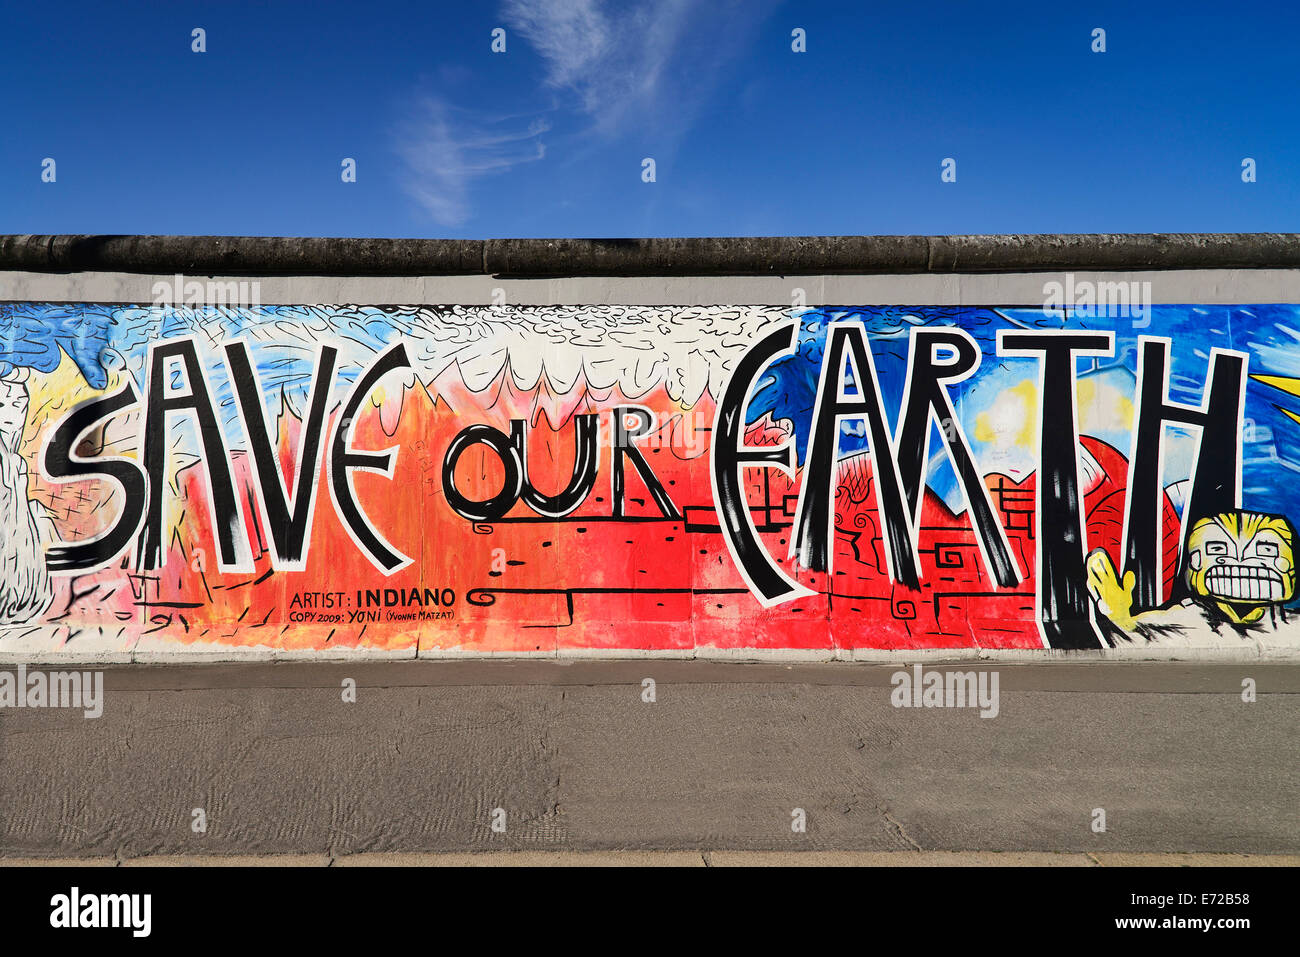 Allemagne, Berlin, l'East Side Gallery un 1,3 km de long de la section Berlin wall Mural connu sous le nom de sauver notre terre par artiste Indiano. Banque D'Images